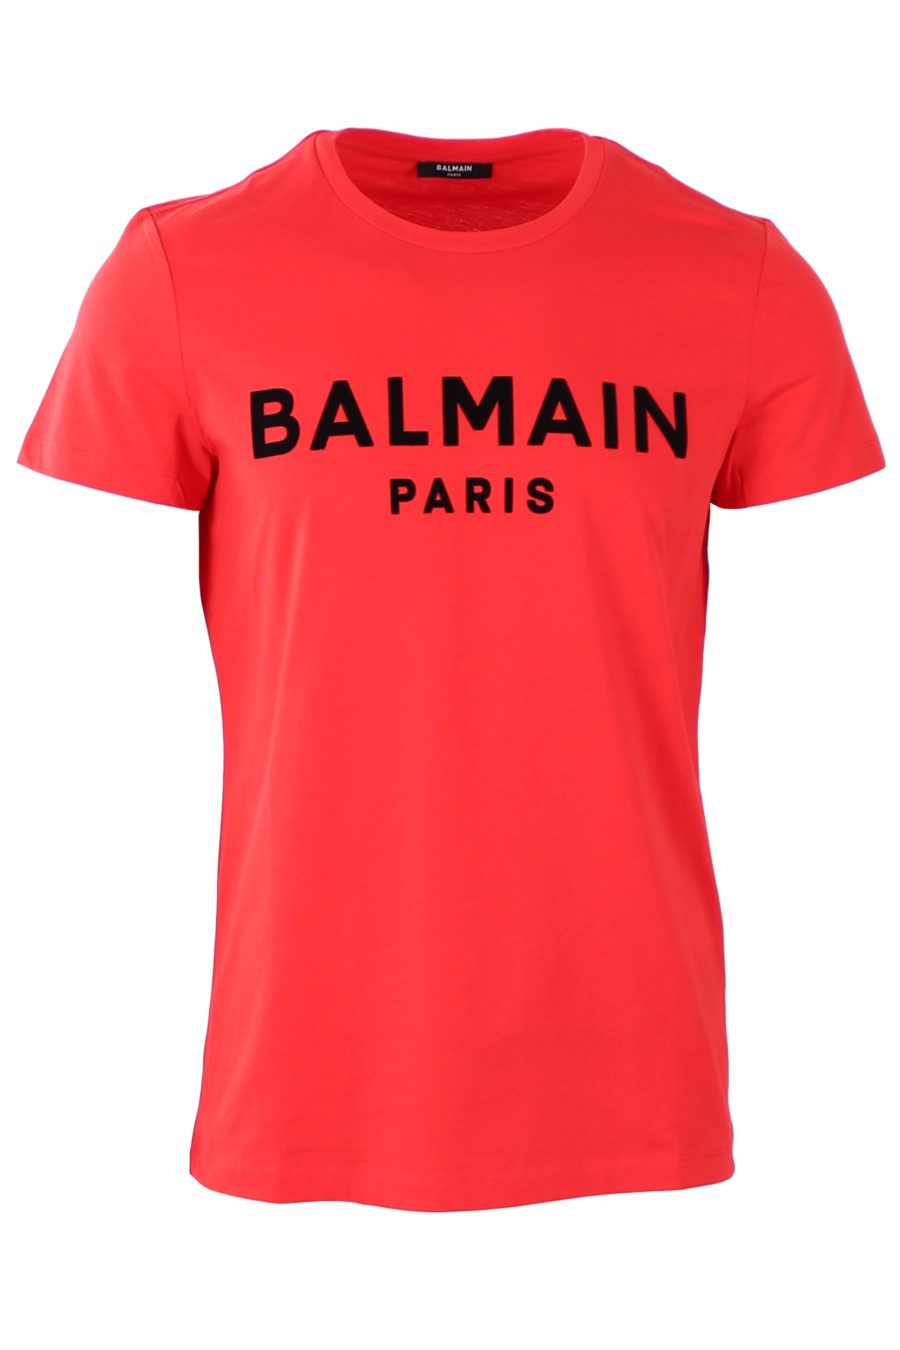 Camiseta Balmain roja con logo afelpado - 2ffd2e717e3eb6a82444e86d6d6d200ea30aa43a